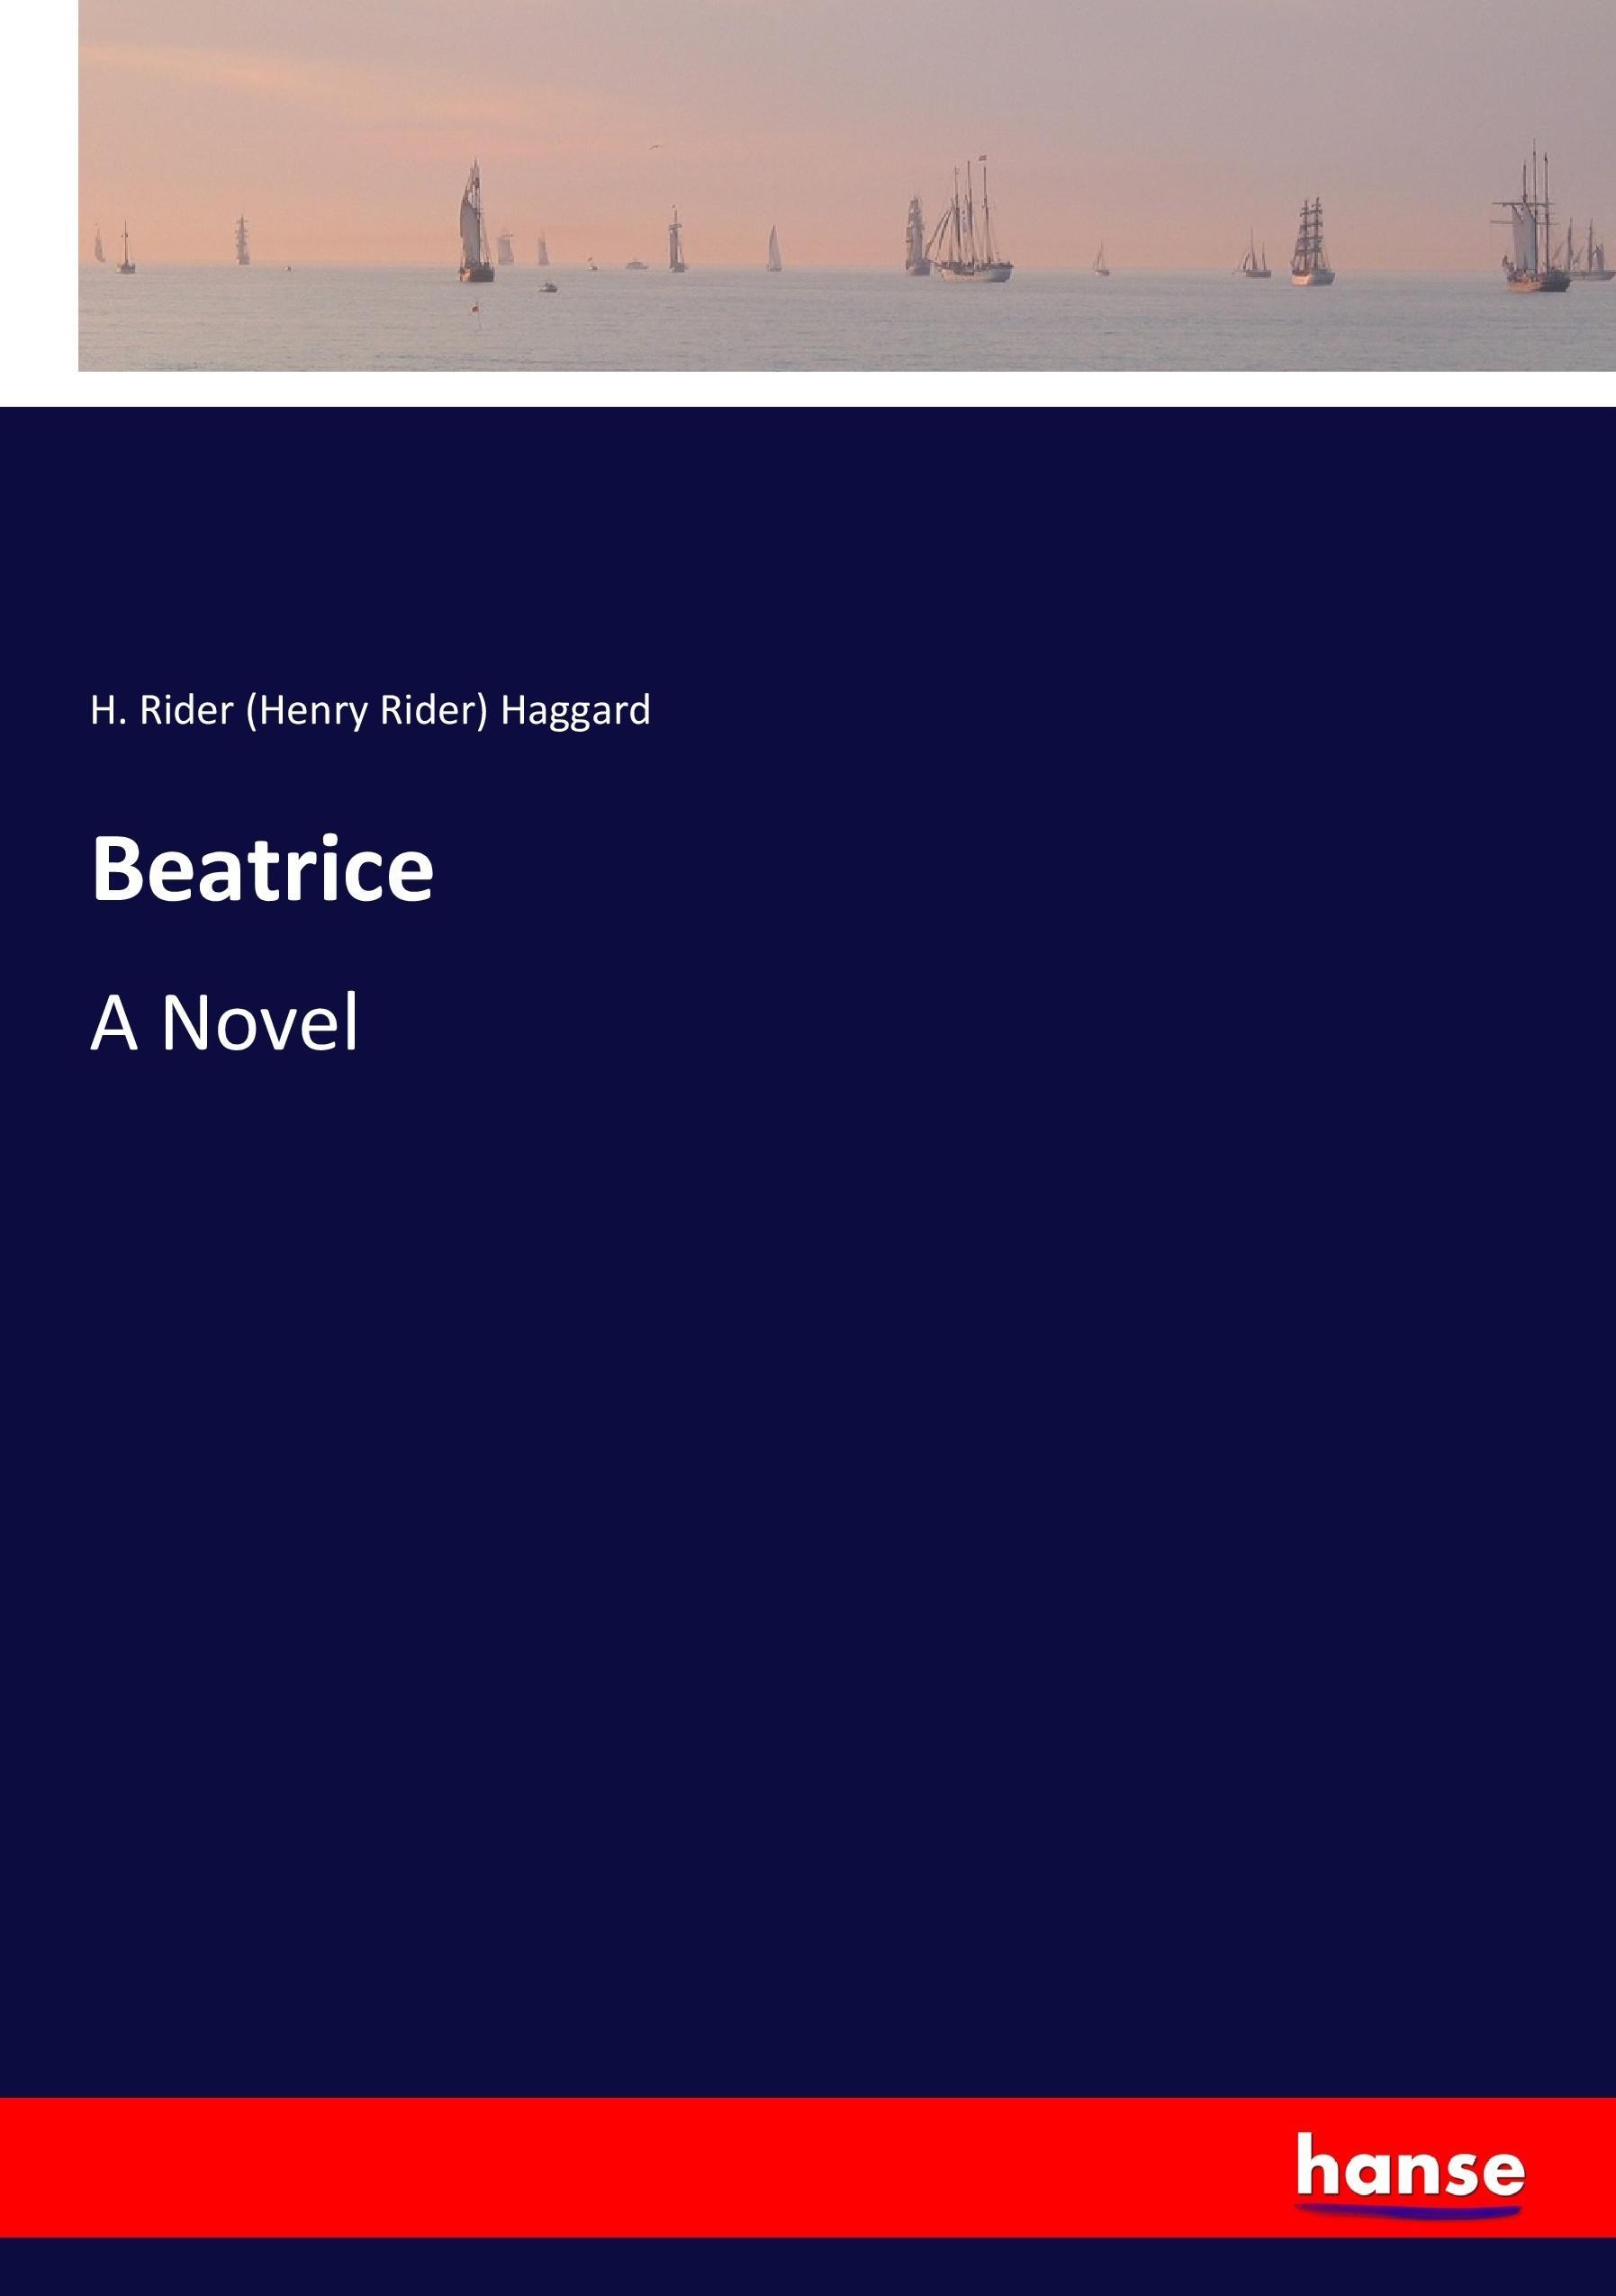 Beatrice | A Novel | H. Rider Haggard | Taschenbuch | Paperback | 336 S. | Englisch | 2017 | hansebooks | EAN 9783337031756 - Haggard, H. Rider (Henry Rider)